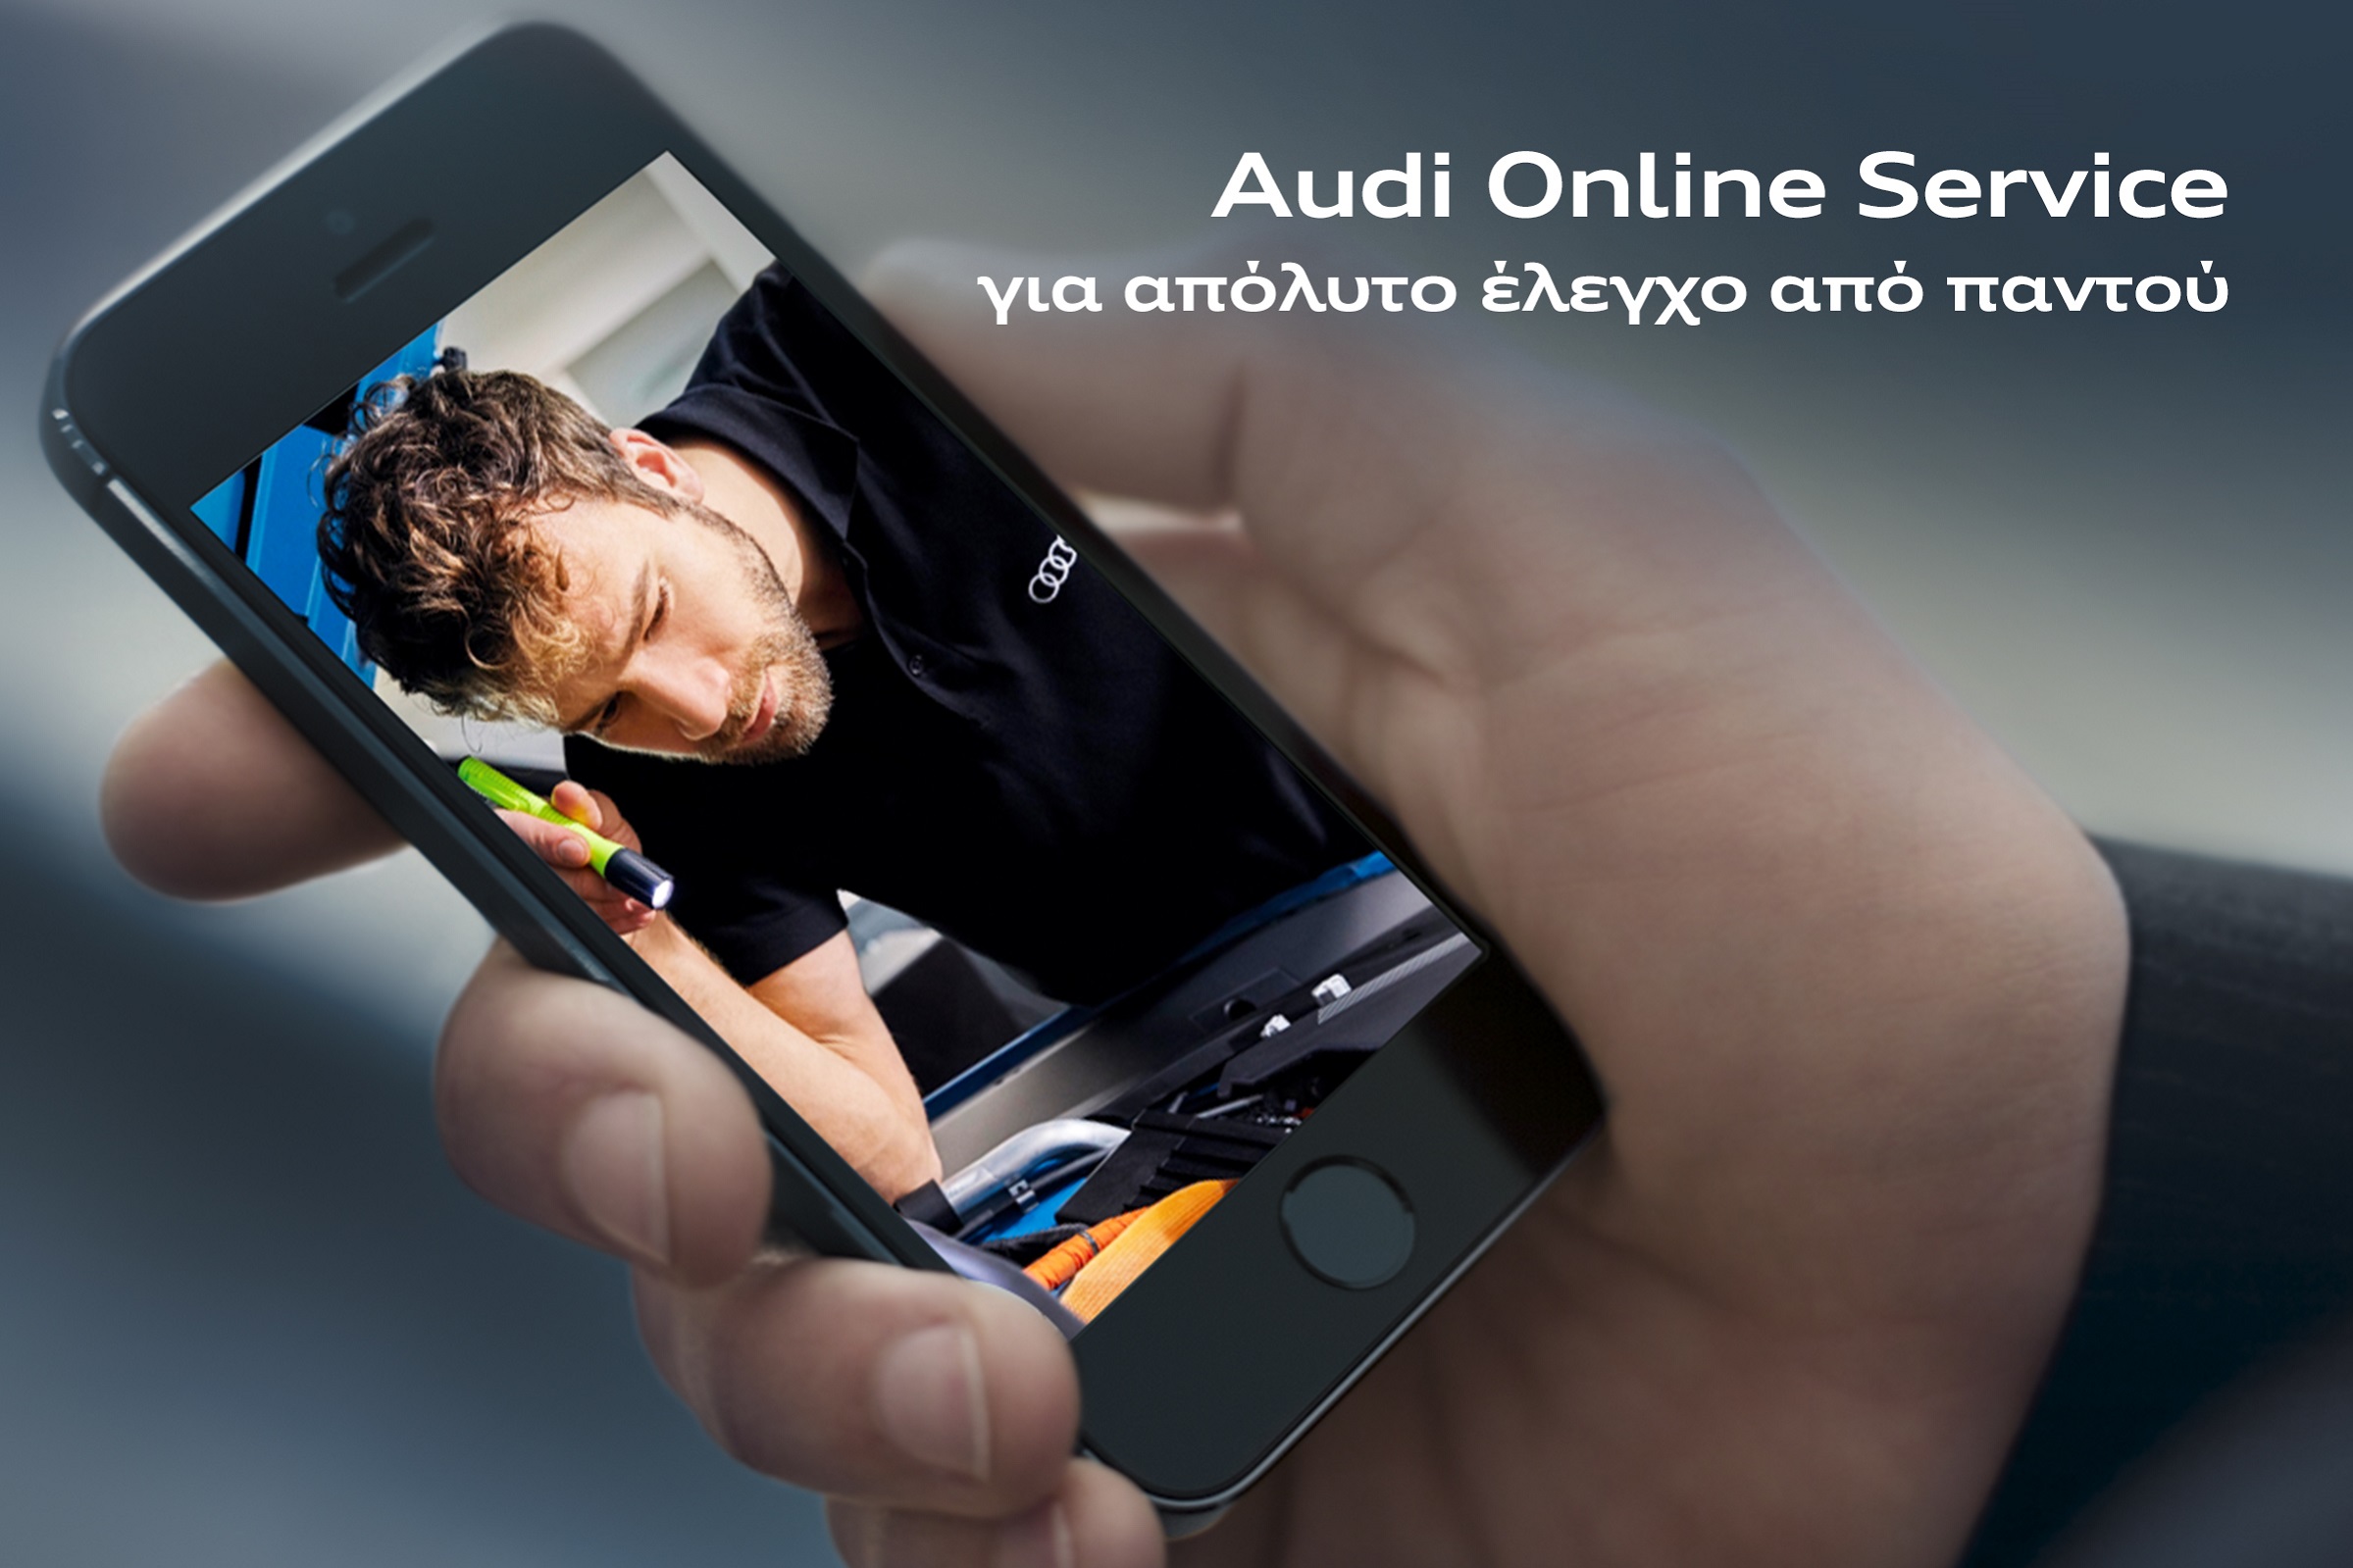 Νέα εποχή στις After Sales υπηρεσίες της Audi στην Ελλάδα